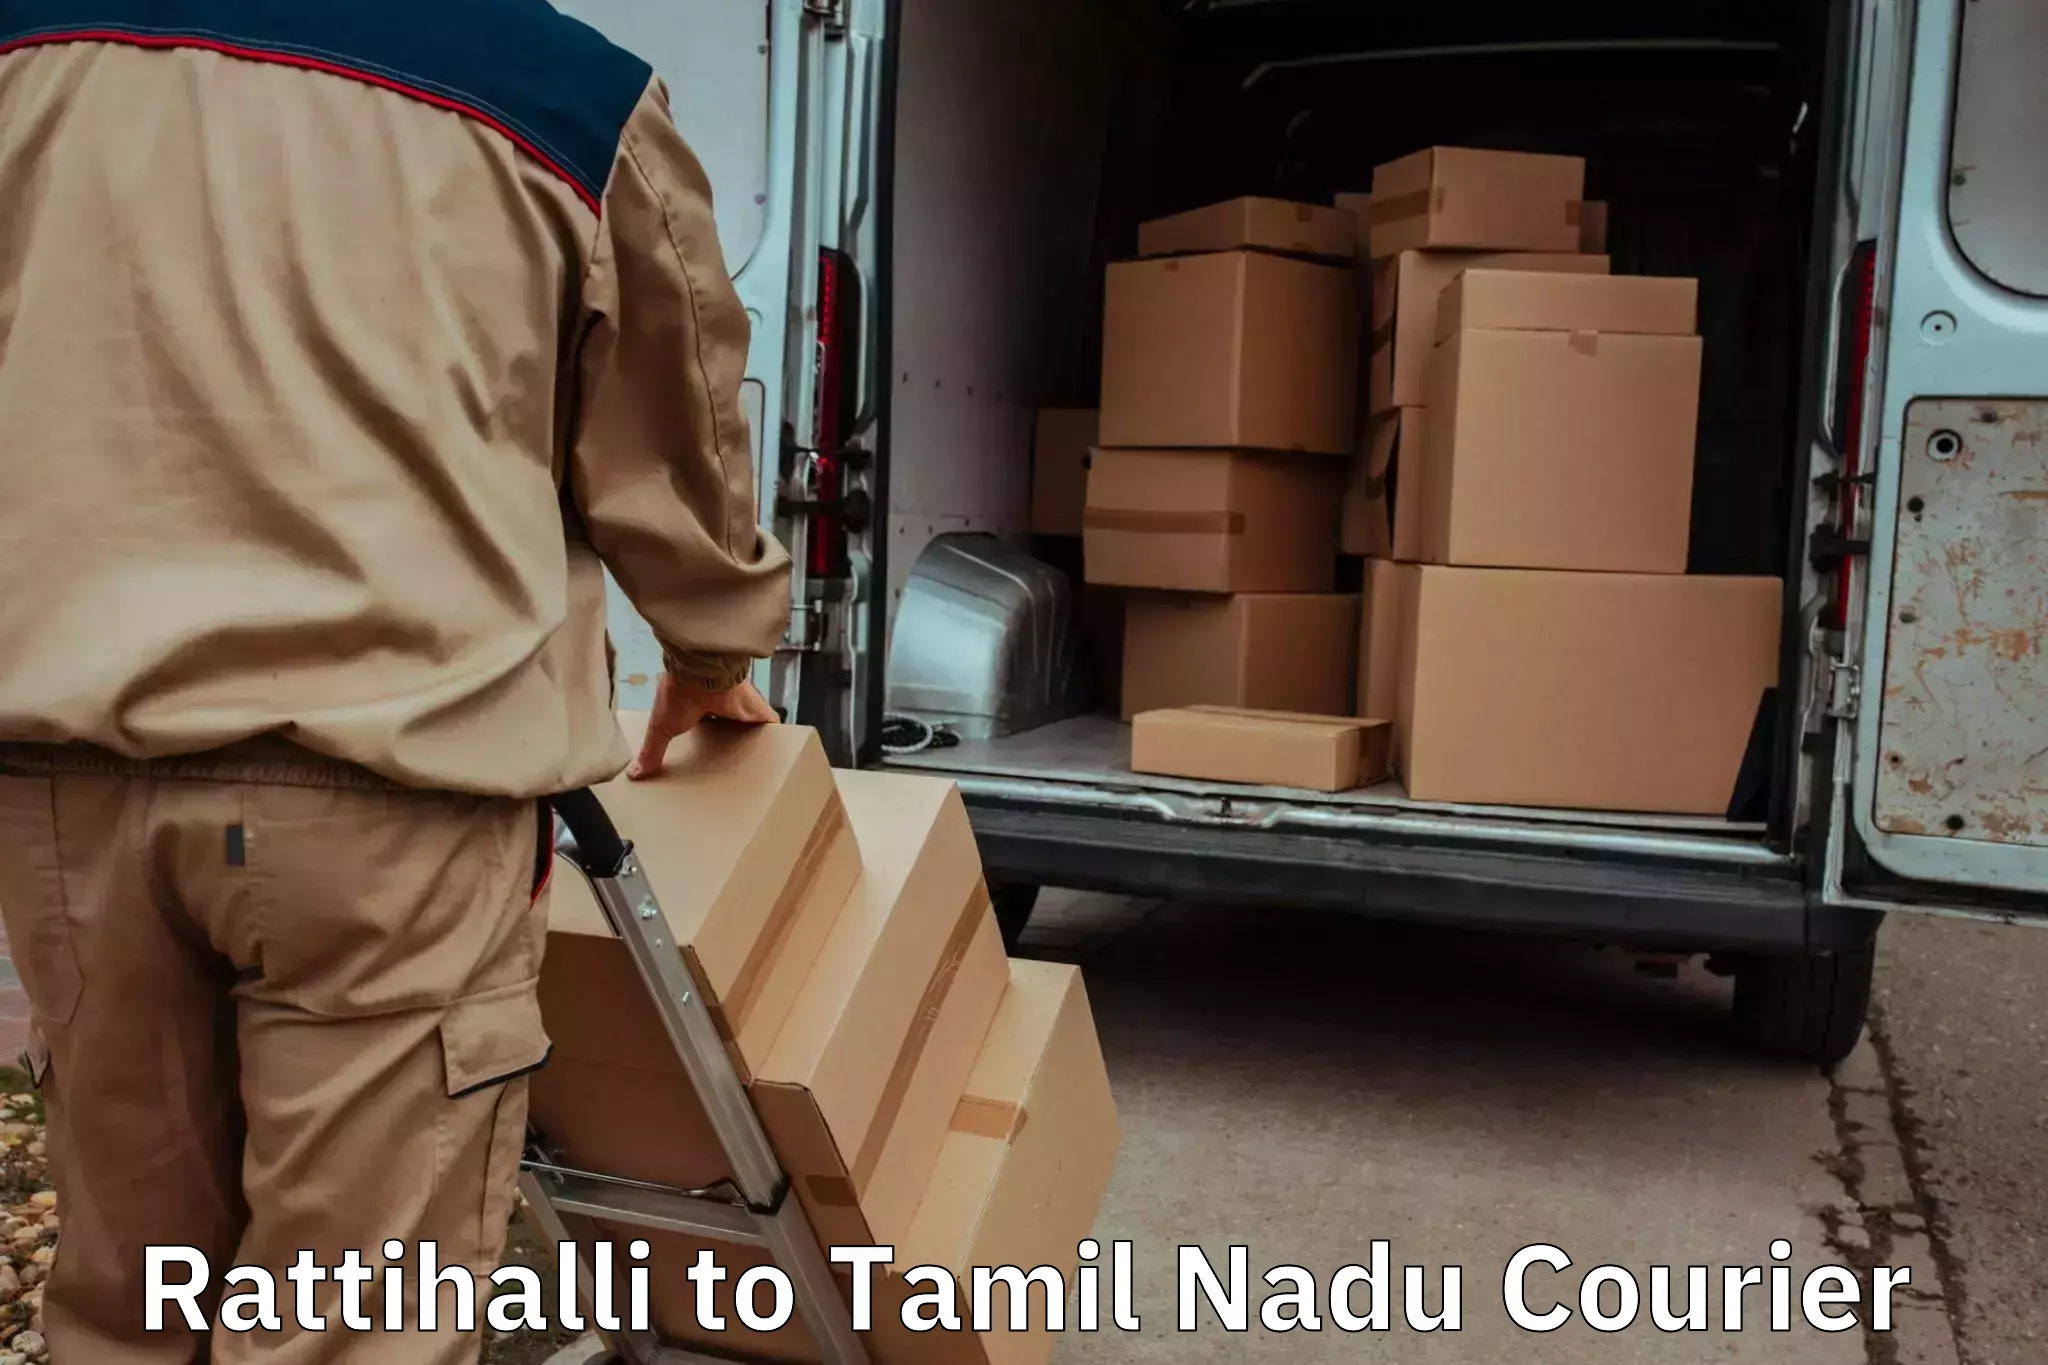 Household goods transport service Rattihalli to Palayankottai